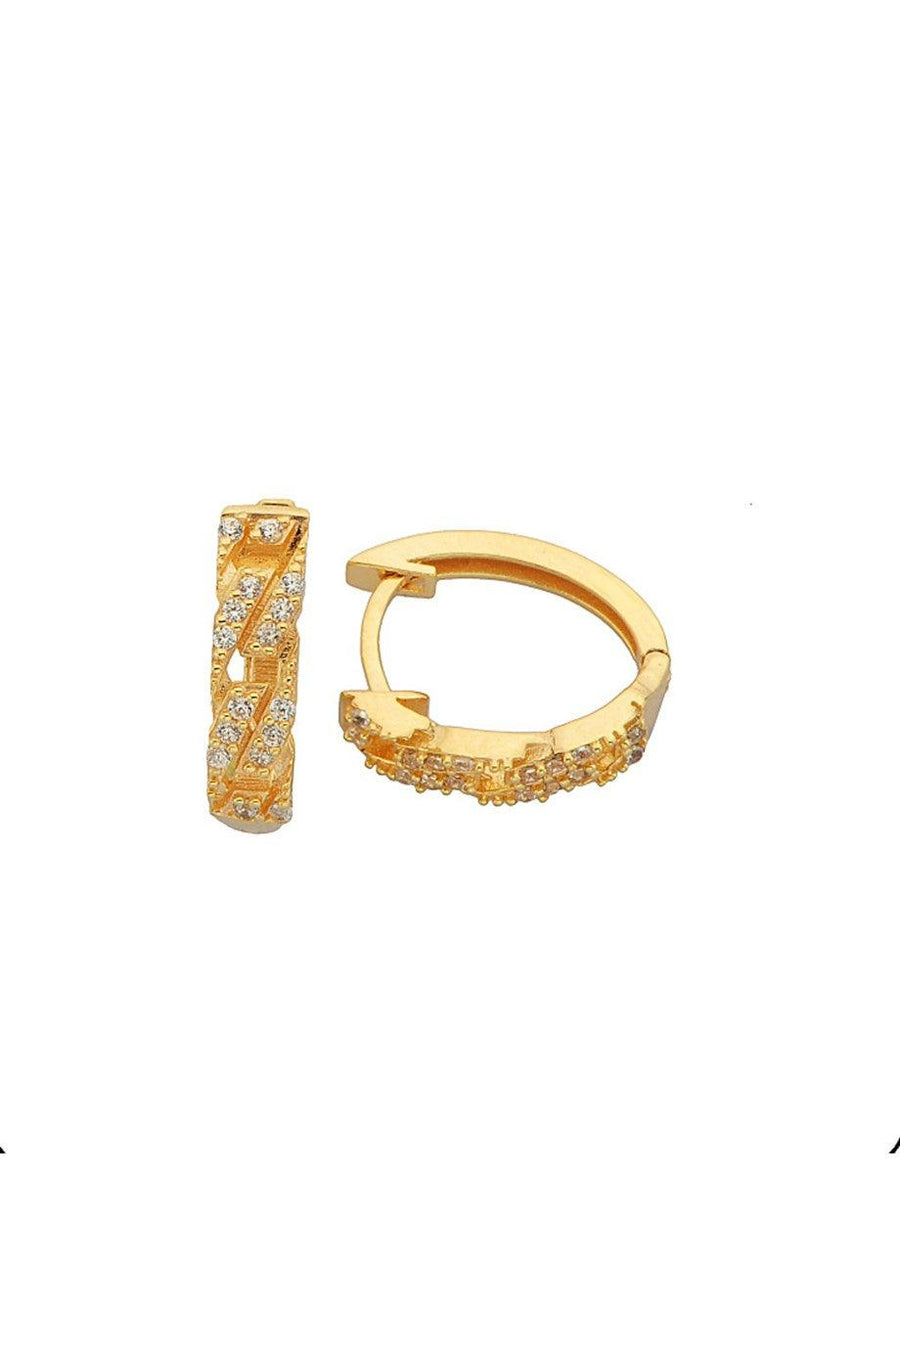 Gold Ring Design Earrings